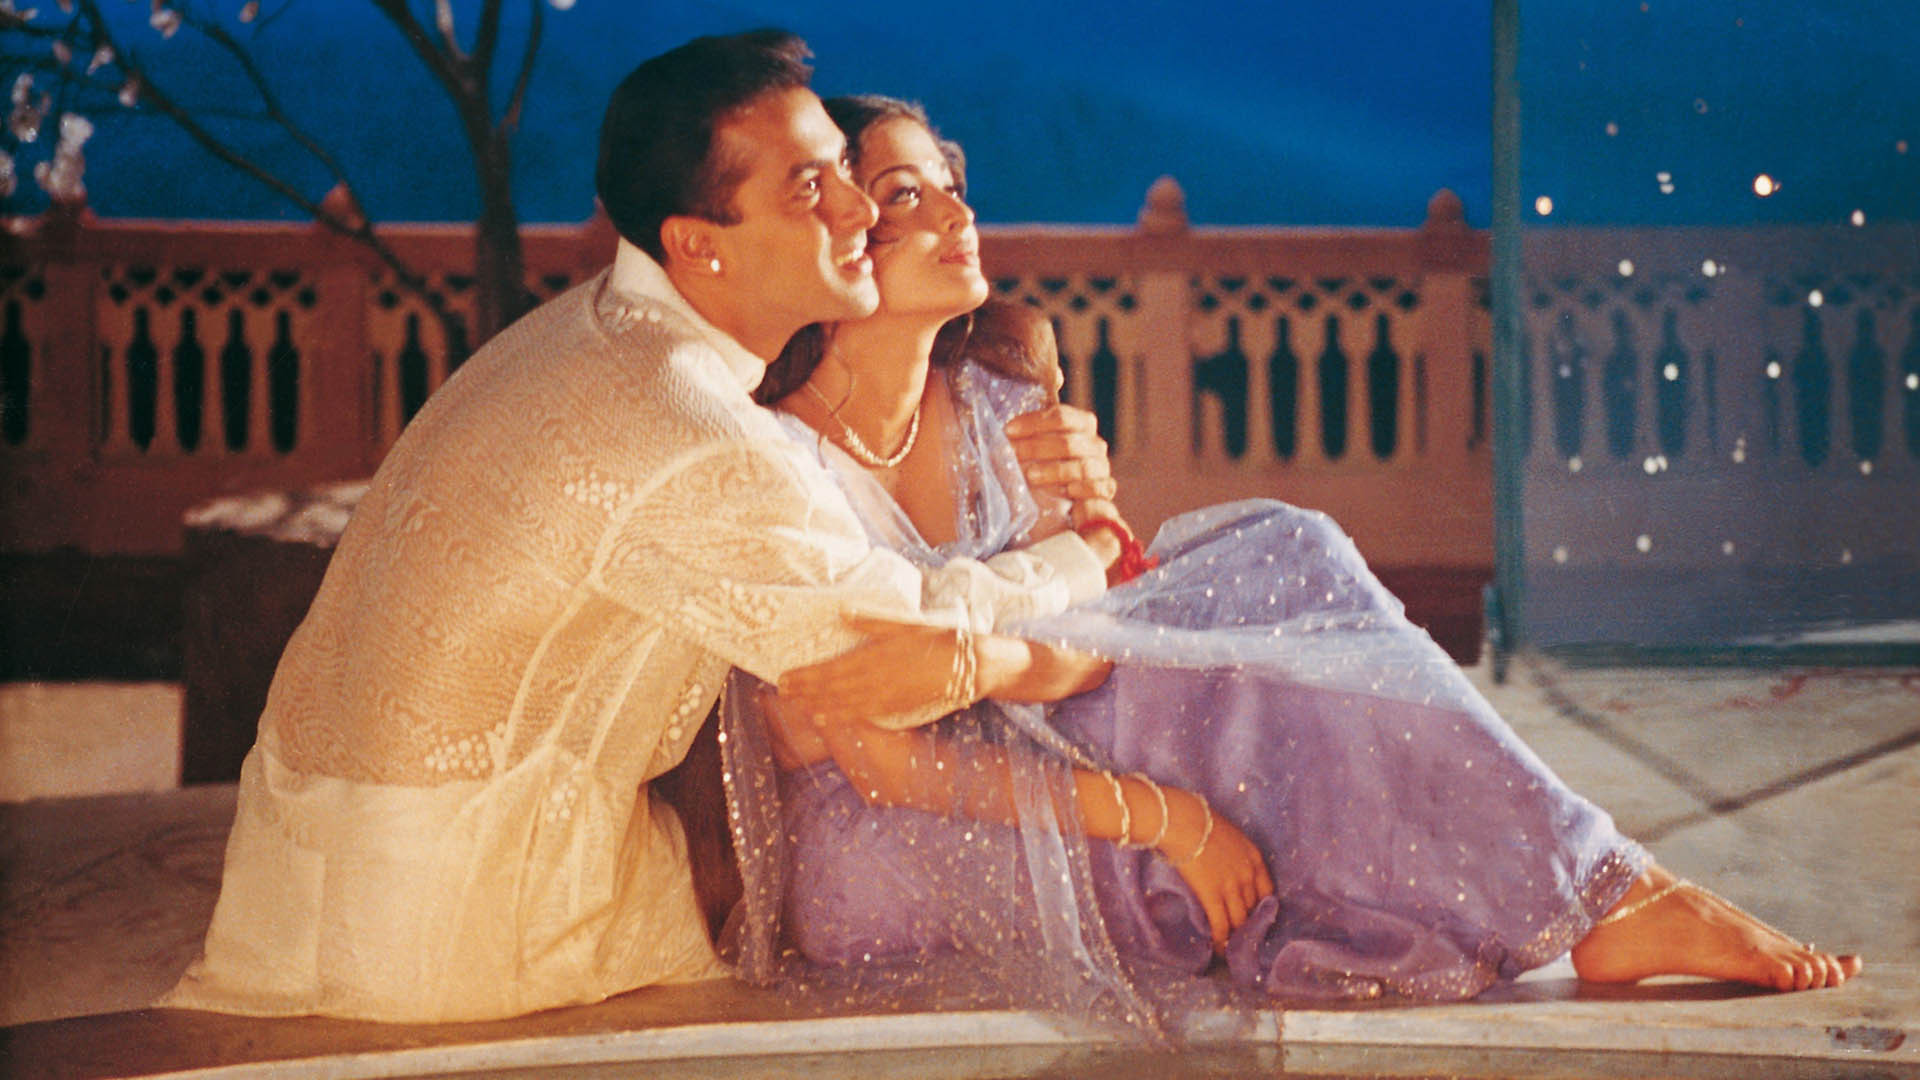 Salman Khan Aishwarya Rai Bachchan Kissing Pictures Go Viral Aishwarya Rai  Spotted Kissing Salman Aishwarya Rai Bachchan Salman Khan  Filmibeat